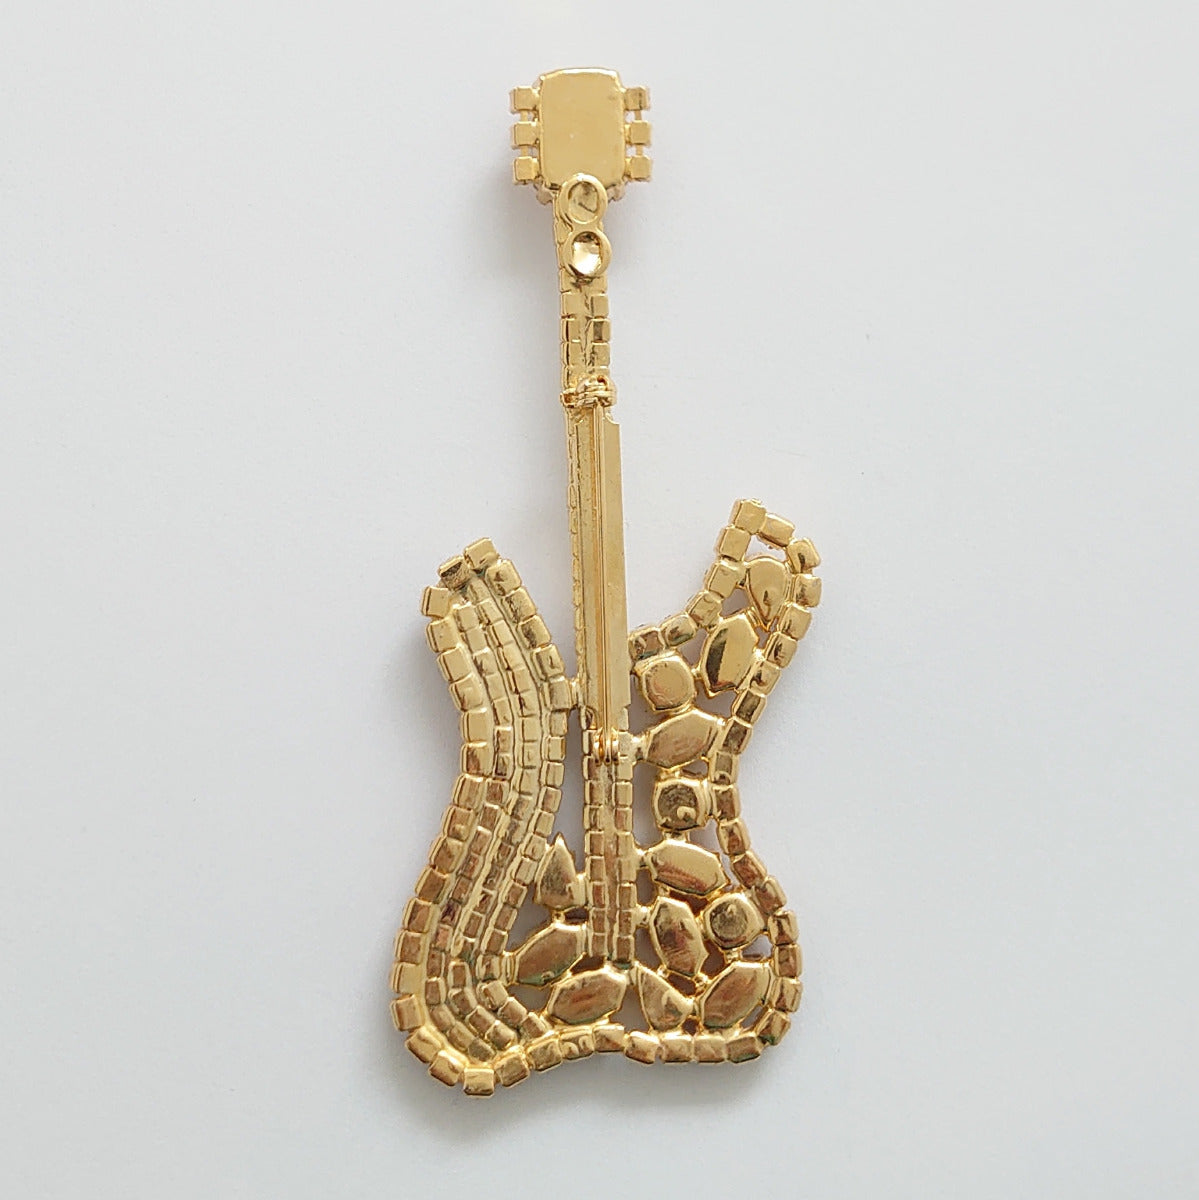 Fender Guitar Brooch - Swarovski Crystals